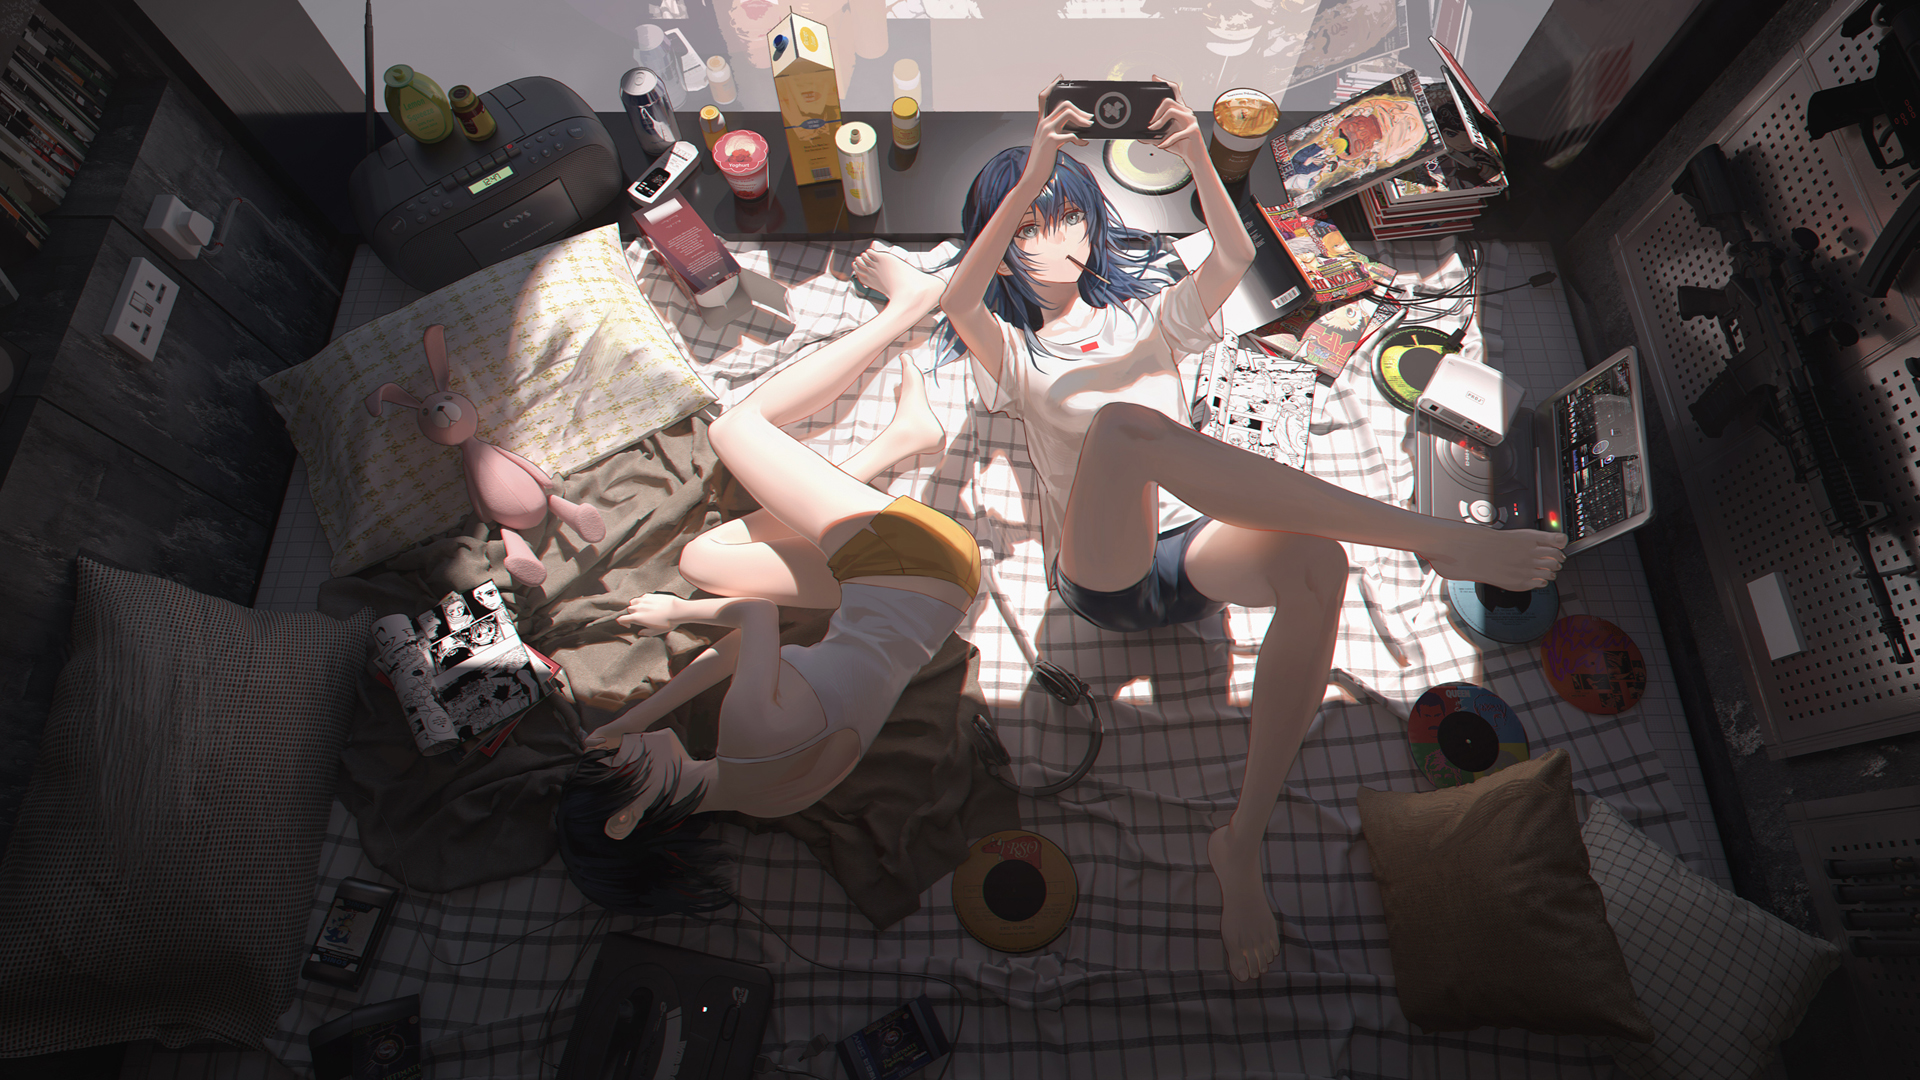 Anime Anime Girls Legs Bedroom Blue Hair PSP Teddy Bears Messy Hunter X Hunter Manga Lying On Side 1920x1080